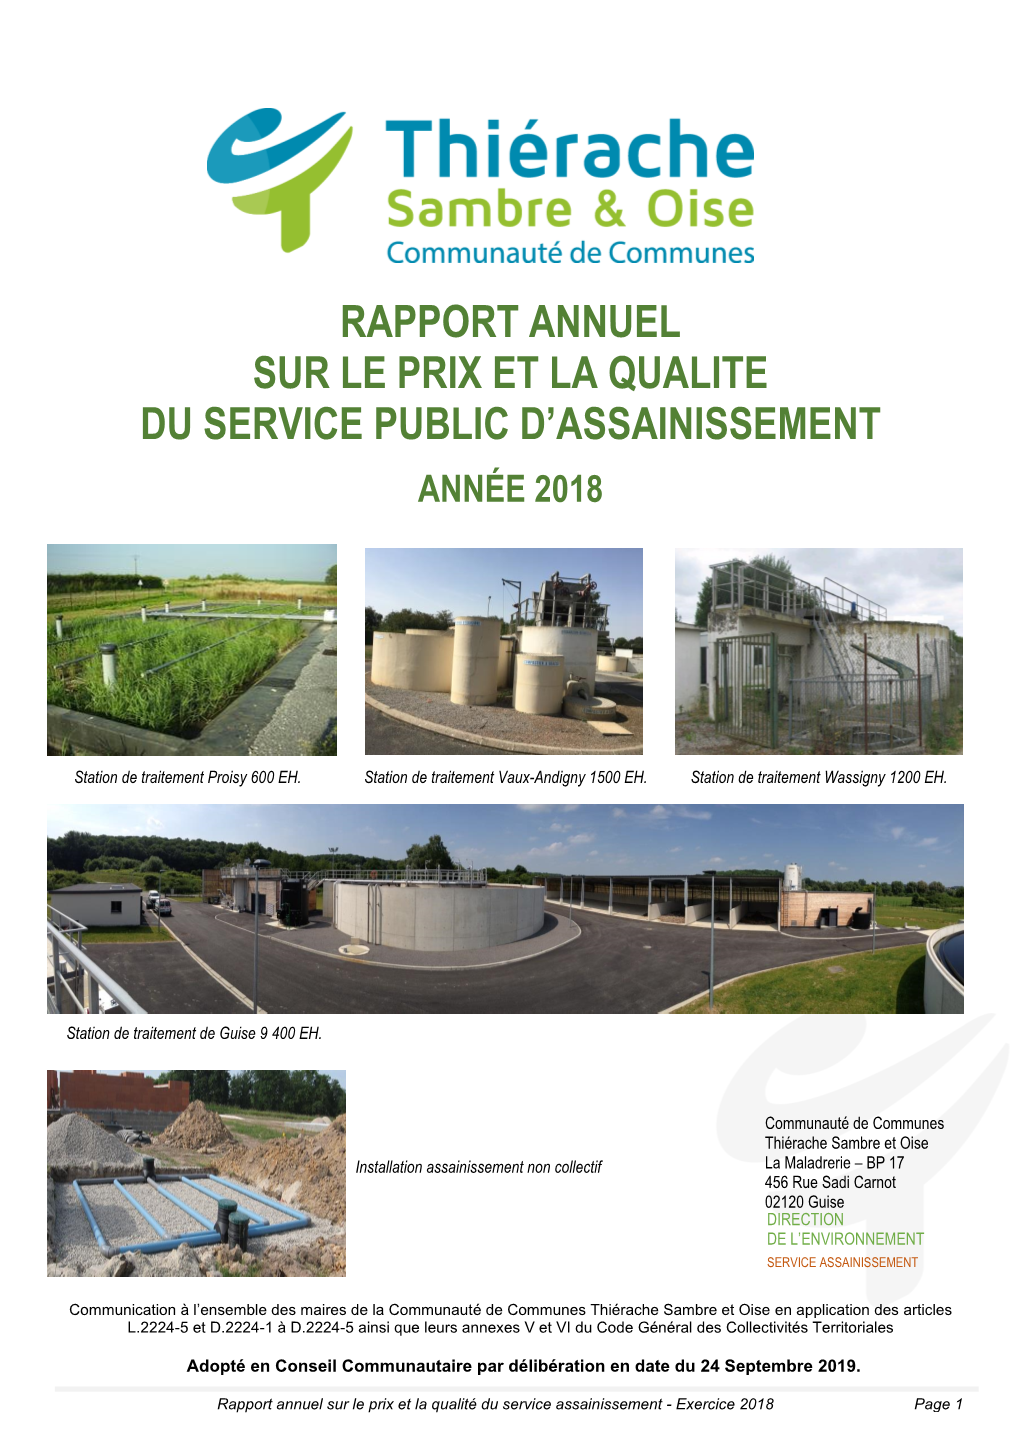 Rapport Annuel Sur Le Prix Et La Qualite Du Service Public D’Assainissement